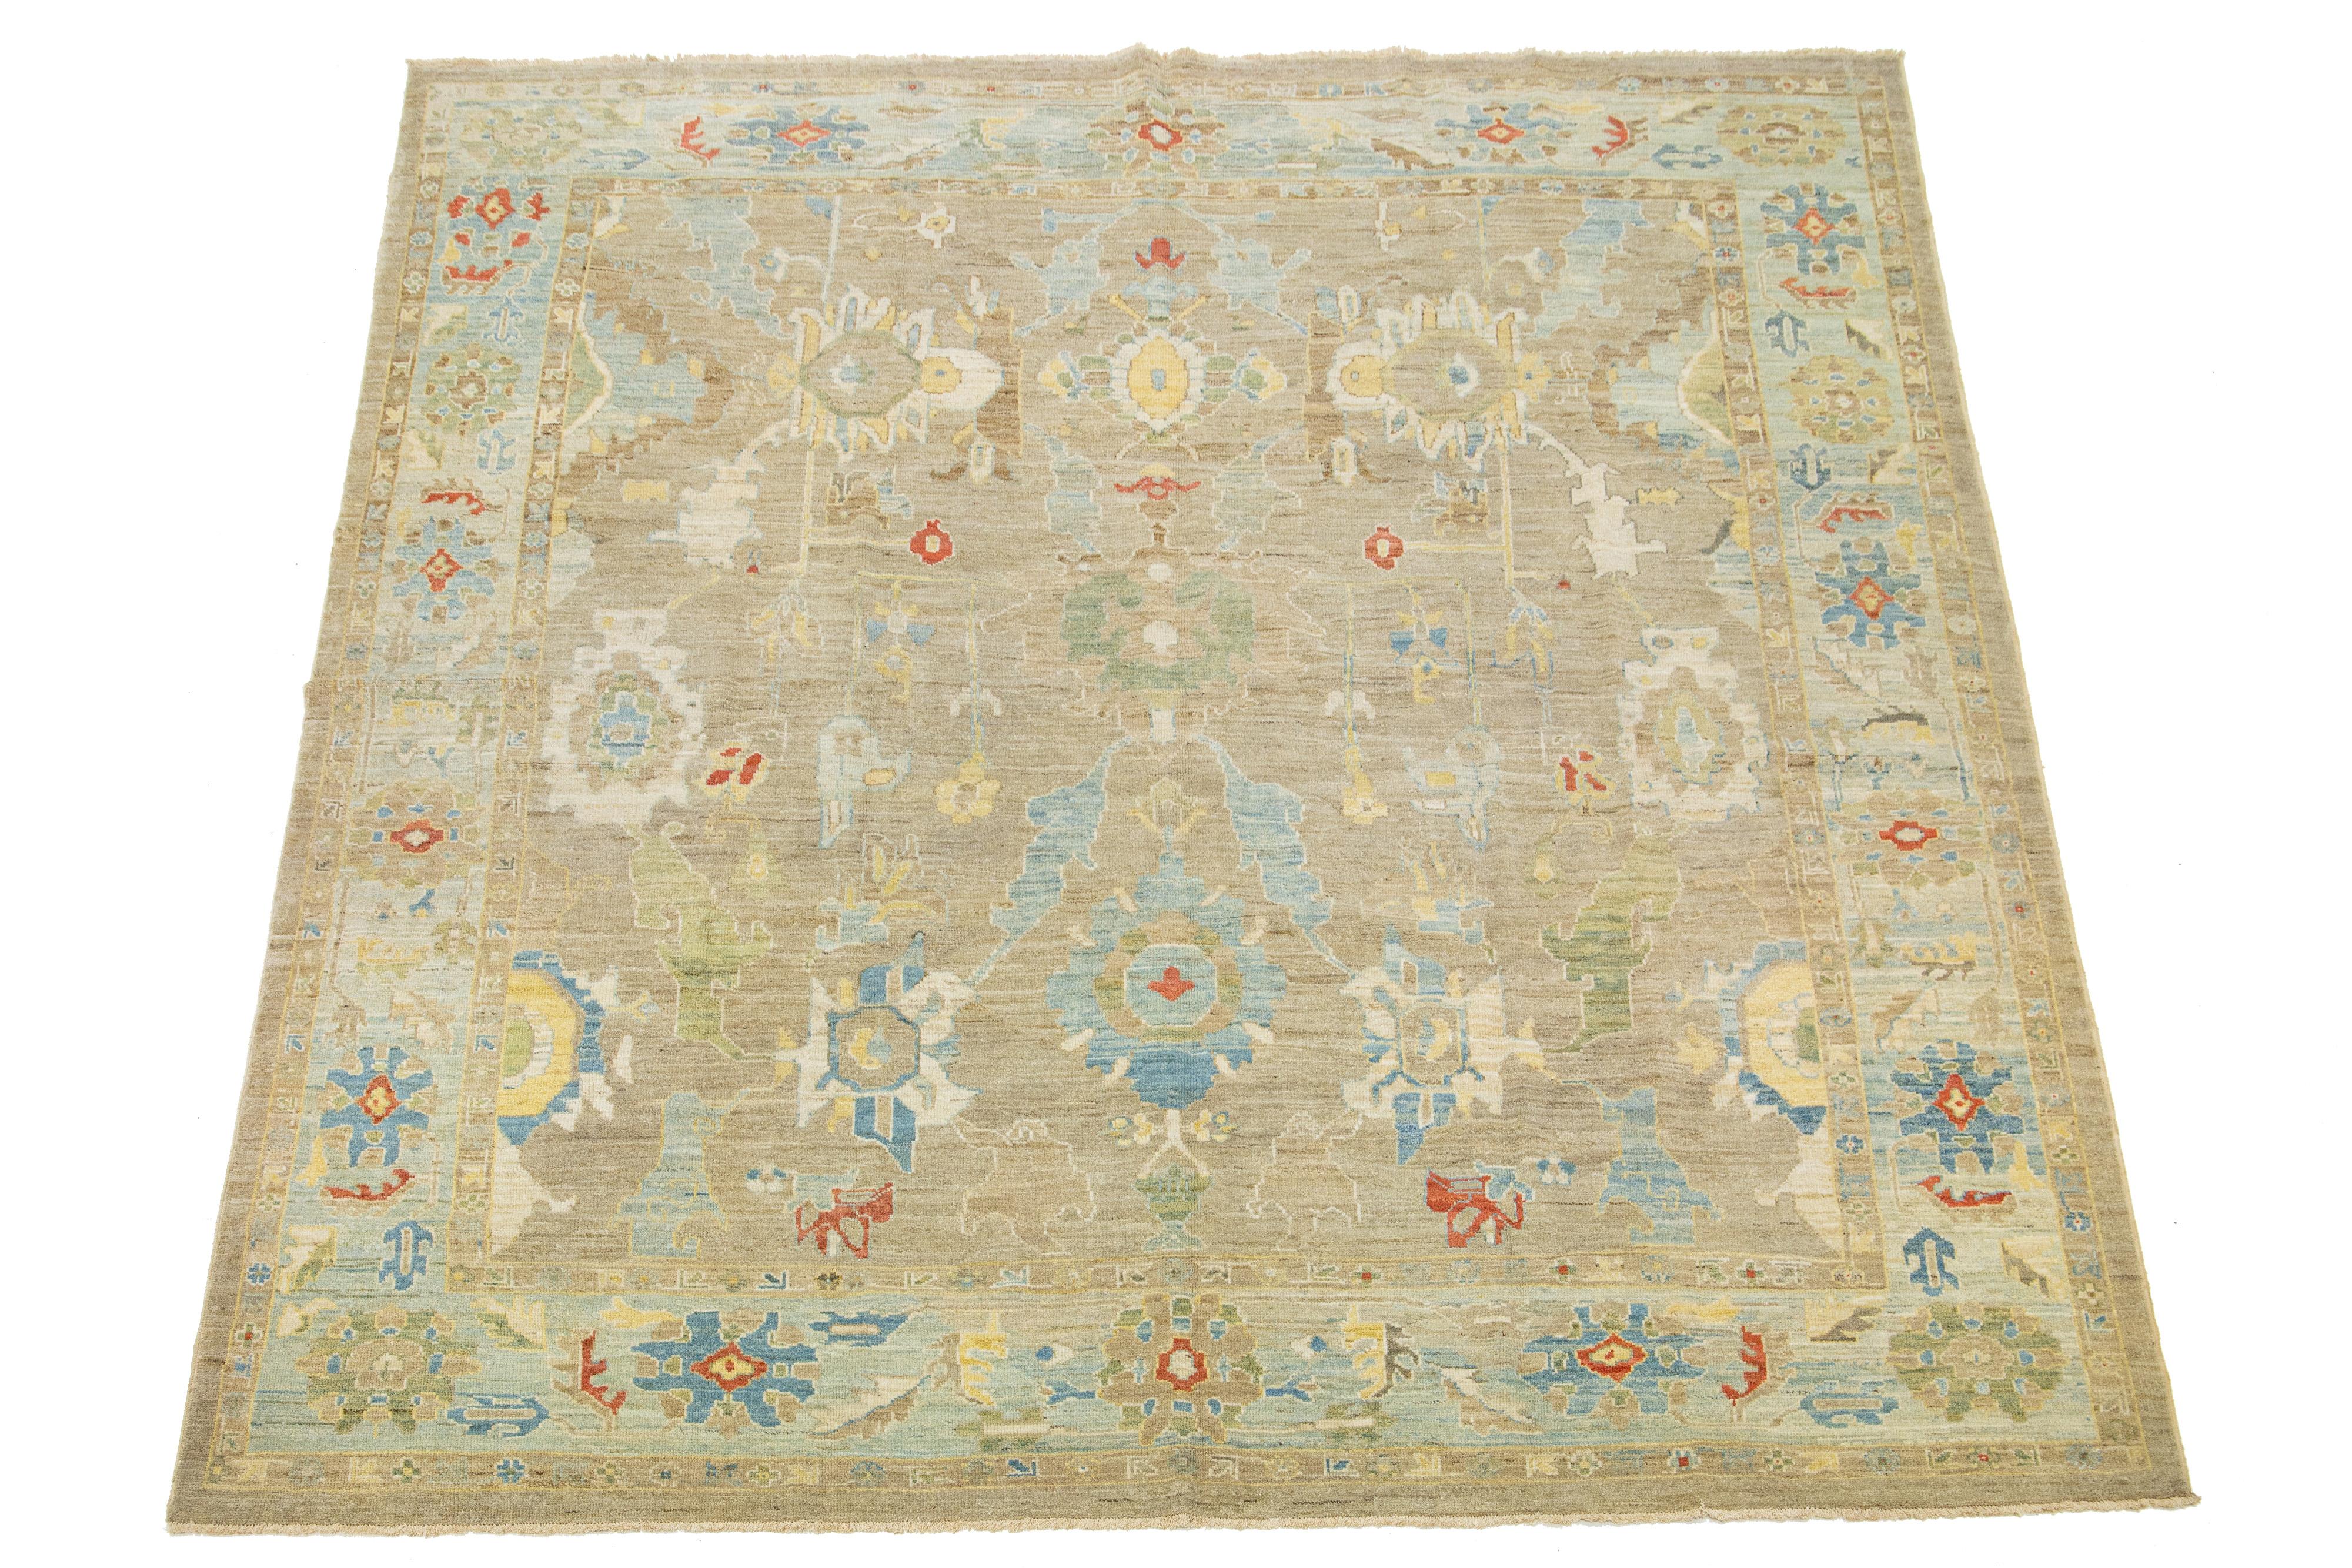 Schöner quadratischer Sultanabad-Teppich aus handgeknüpfter Wolle mit hellbraunem Feld. Dieser Sultanabad-Teppich hat einen blauen Rahmen und mehrfarbige Akzente in einem herrlichen klassischen Blumenmuster.

Dieser Teppich misst 10'4